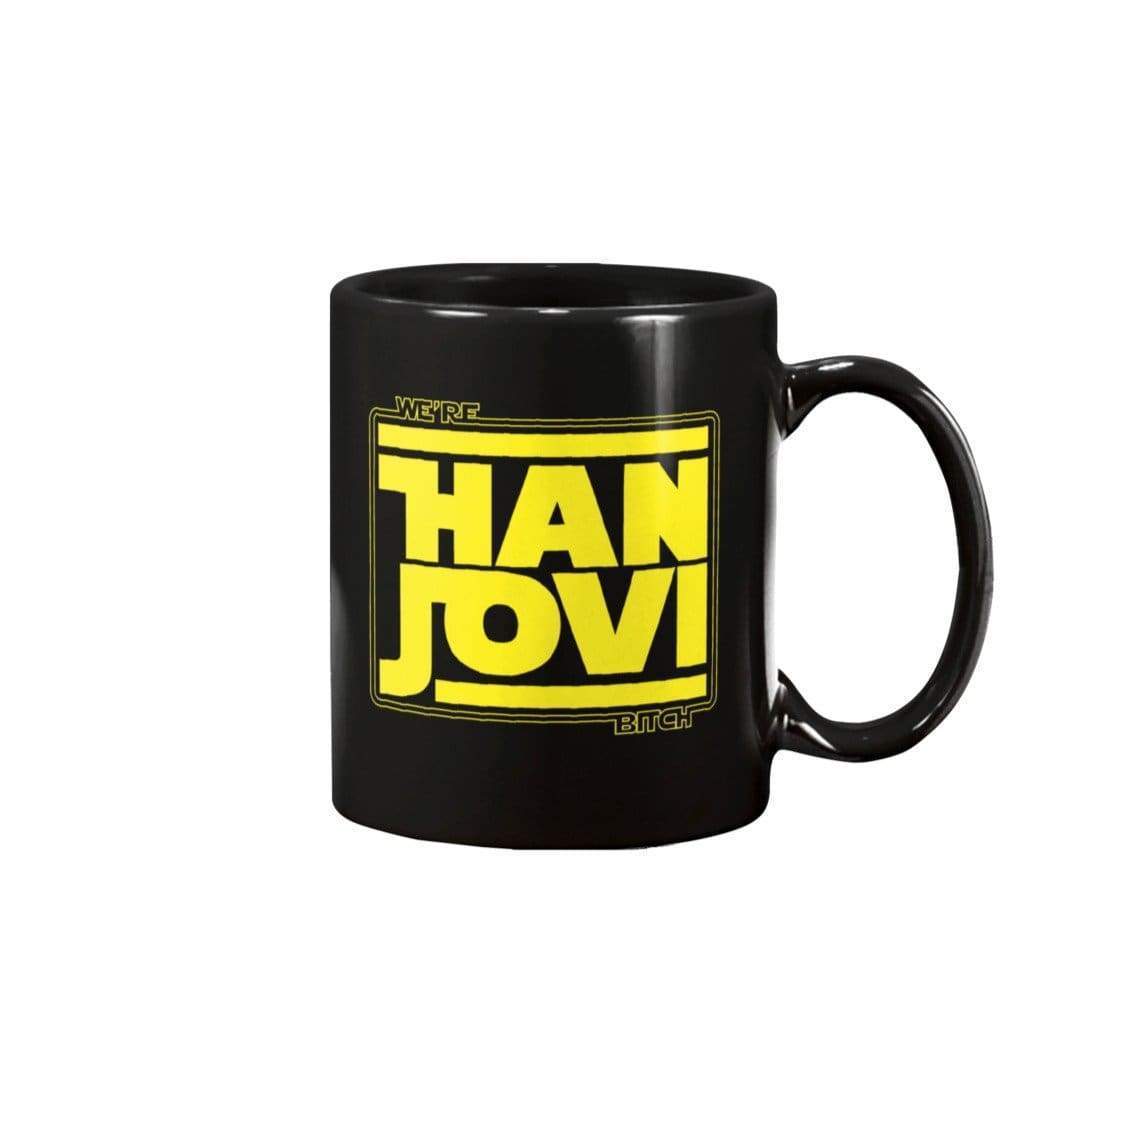 DSC We’re Han Jovi 11oz Coffee Mug - Black / 11OZ - Mugs